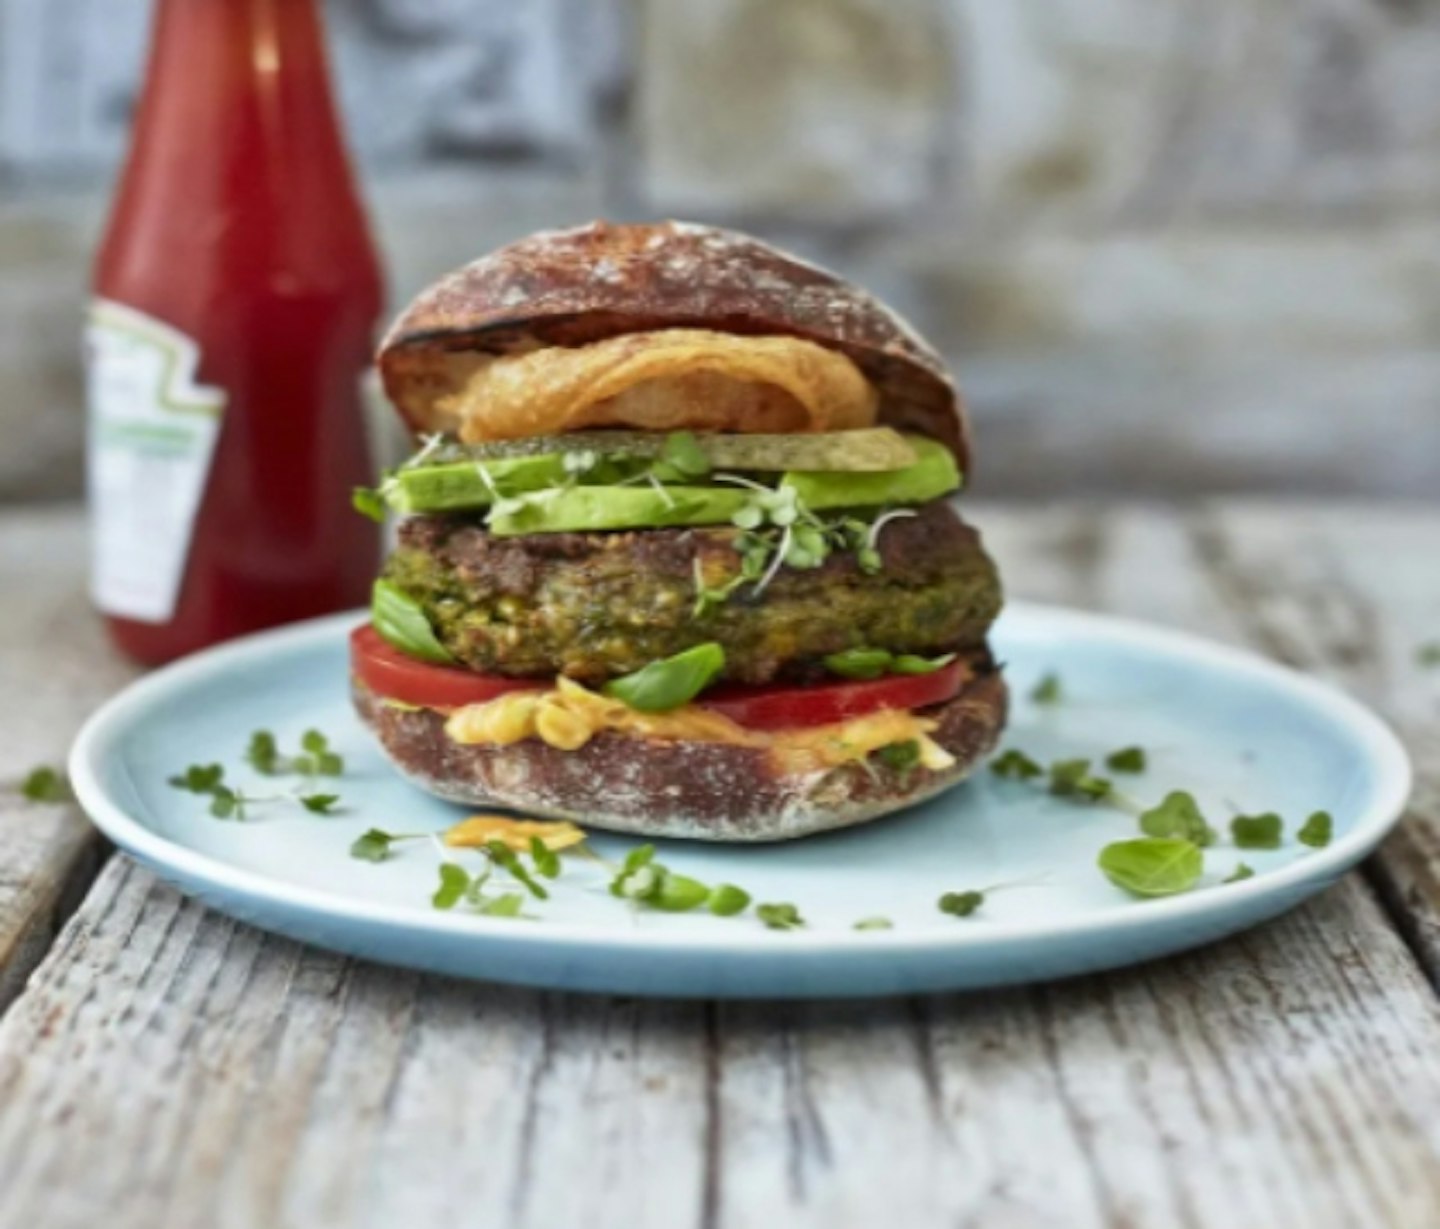 The 'brilliant' veggie burger